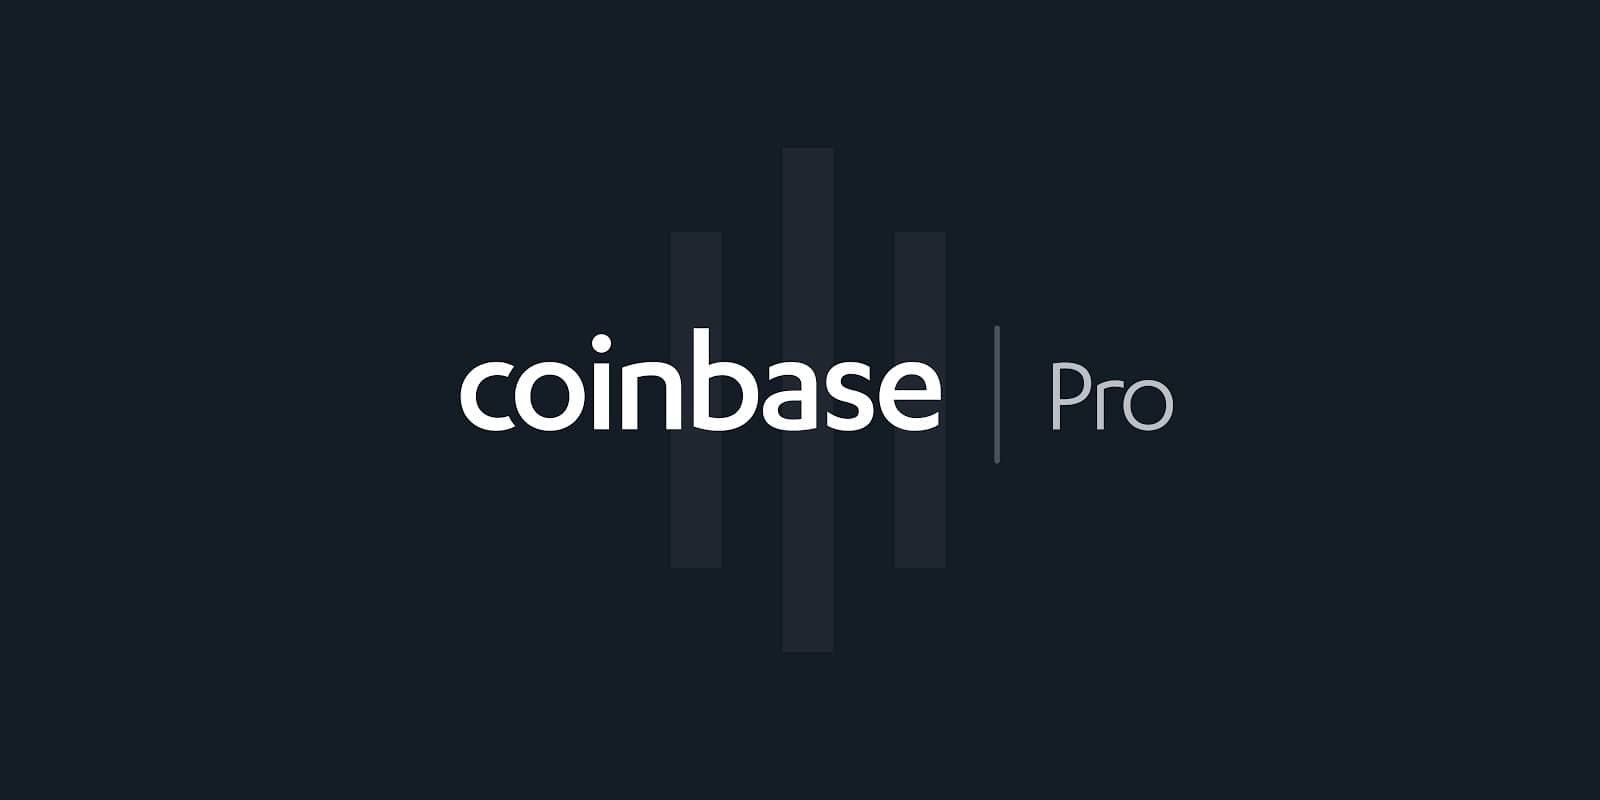 Coinbase Pro modifie ses tarifs et pénalise les petits ...